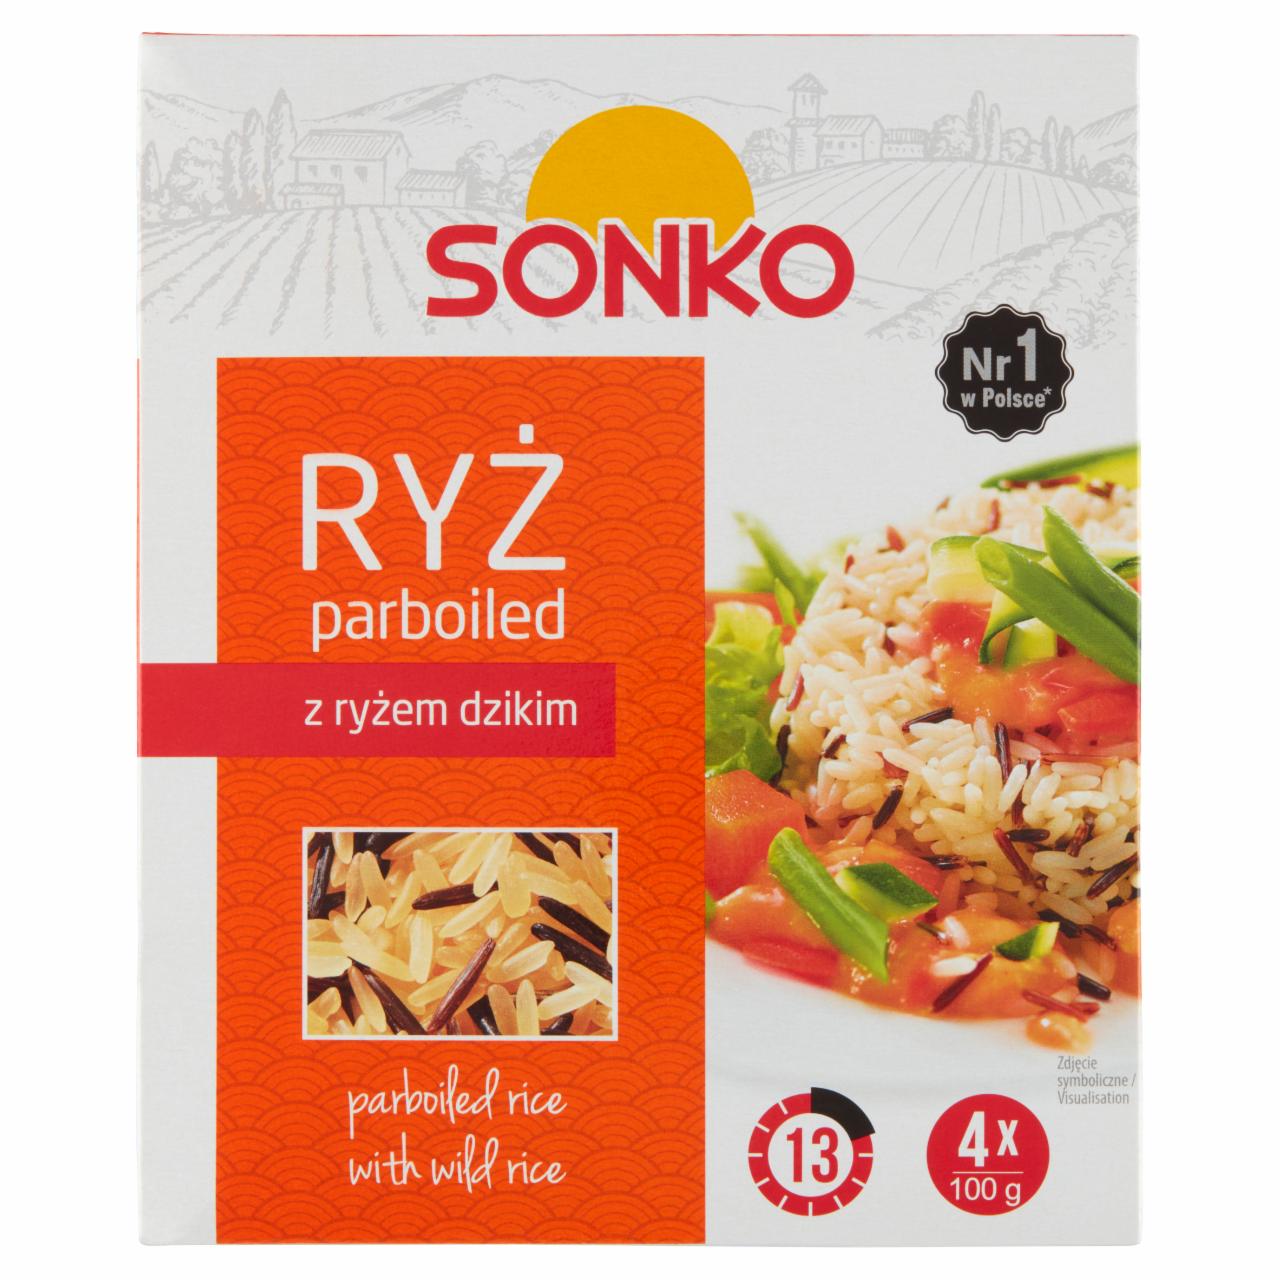 Zdjęcia - Sonko Ryż parboiled z ryżem dzikim 400 g (4 x 100 g)